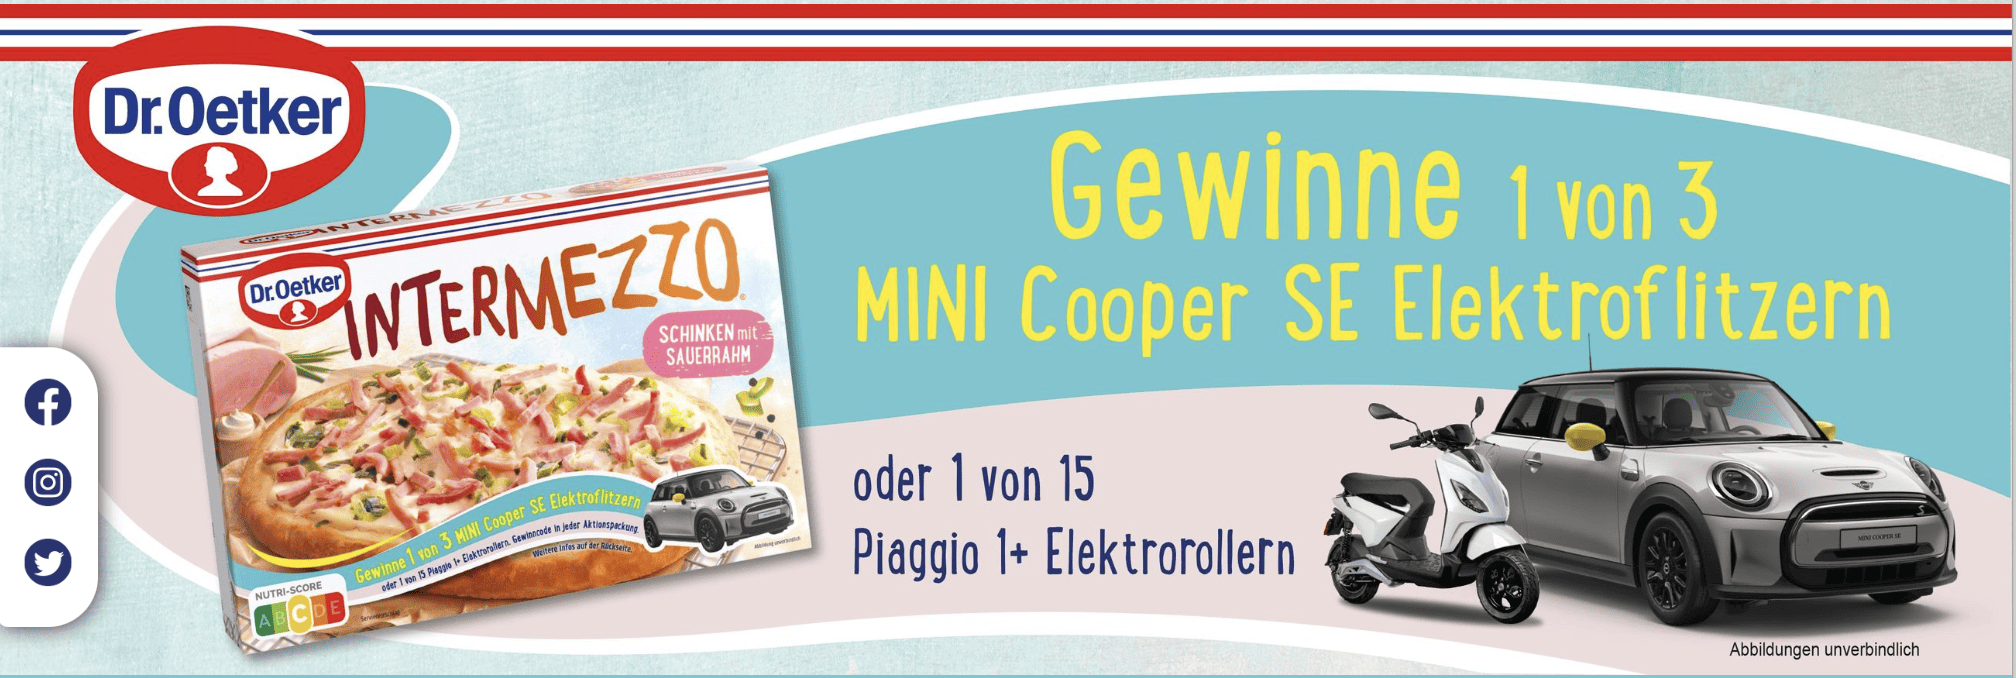 case_Gewinne mit Intermezzo 1 von 3 Mini Cooper SE oder 1 von 15 Piaggio Rollern!